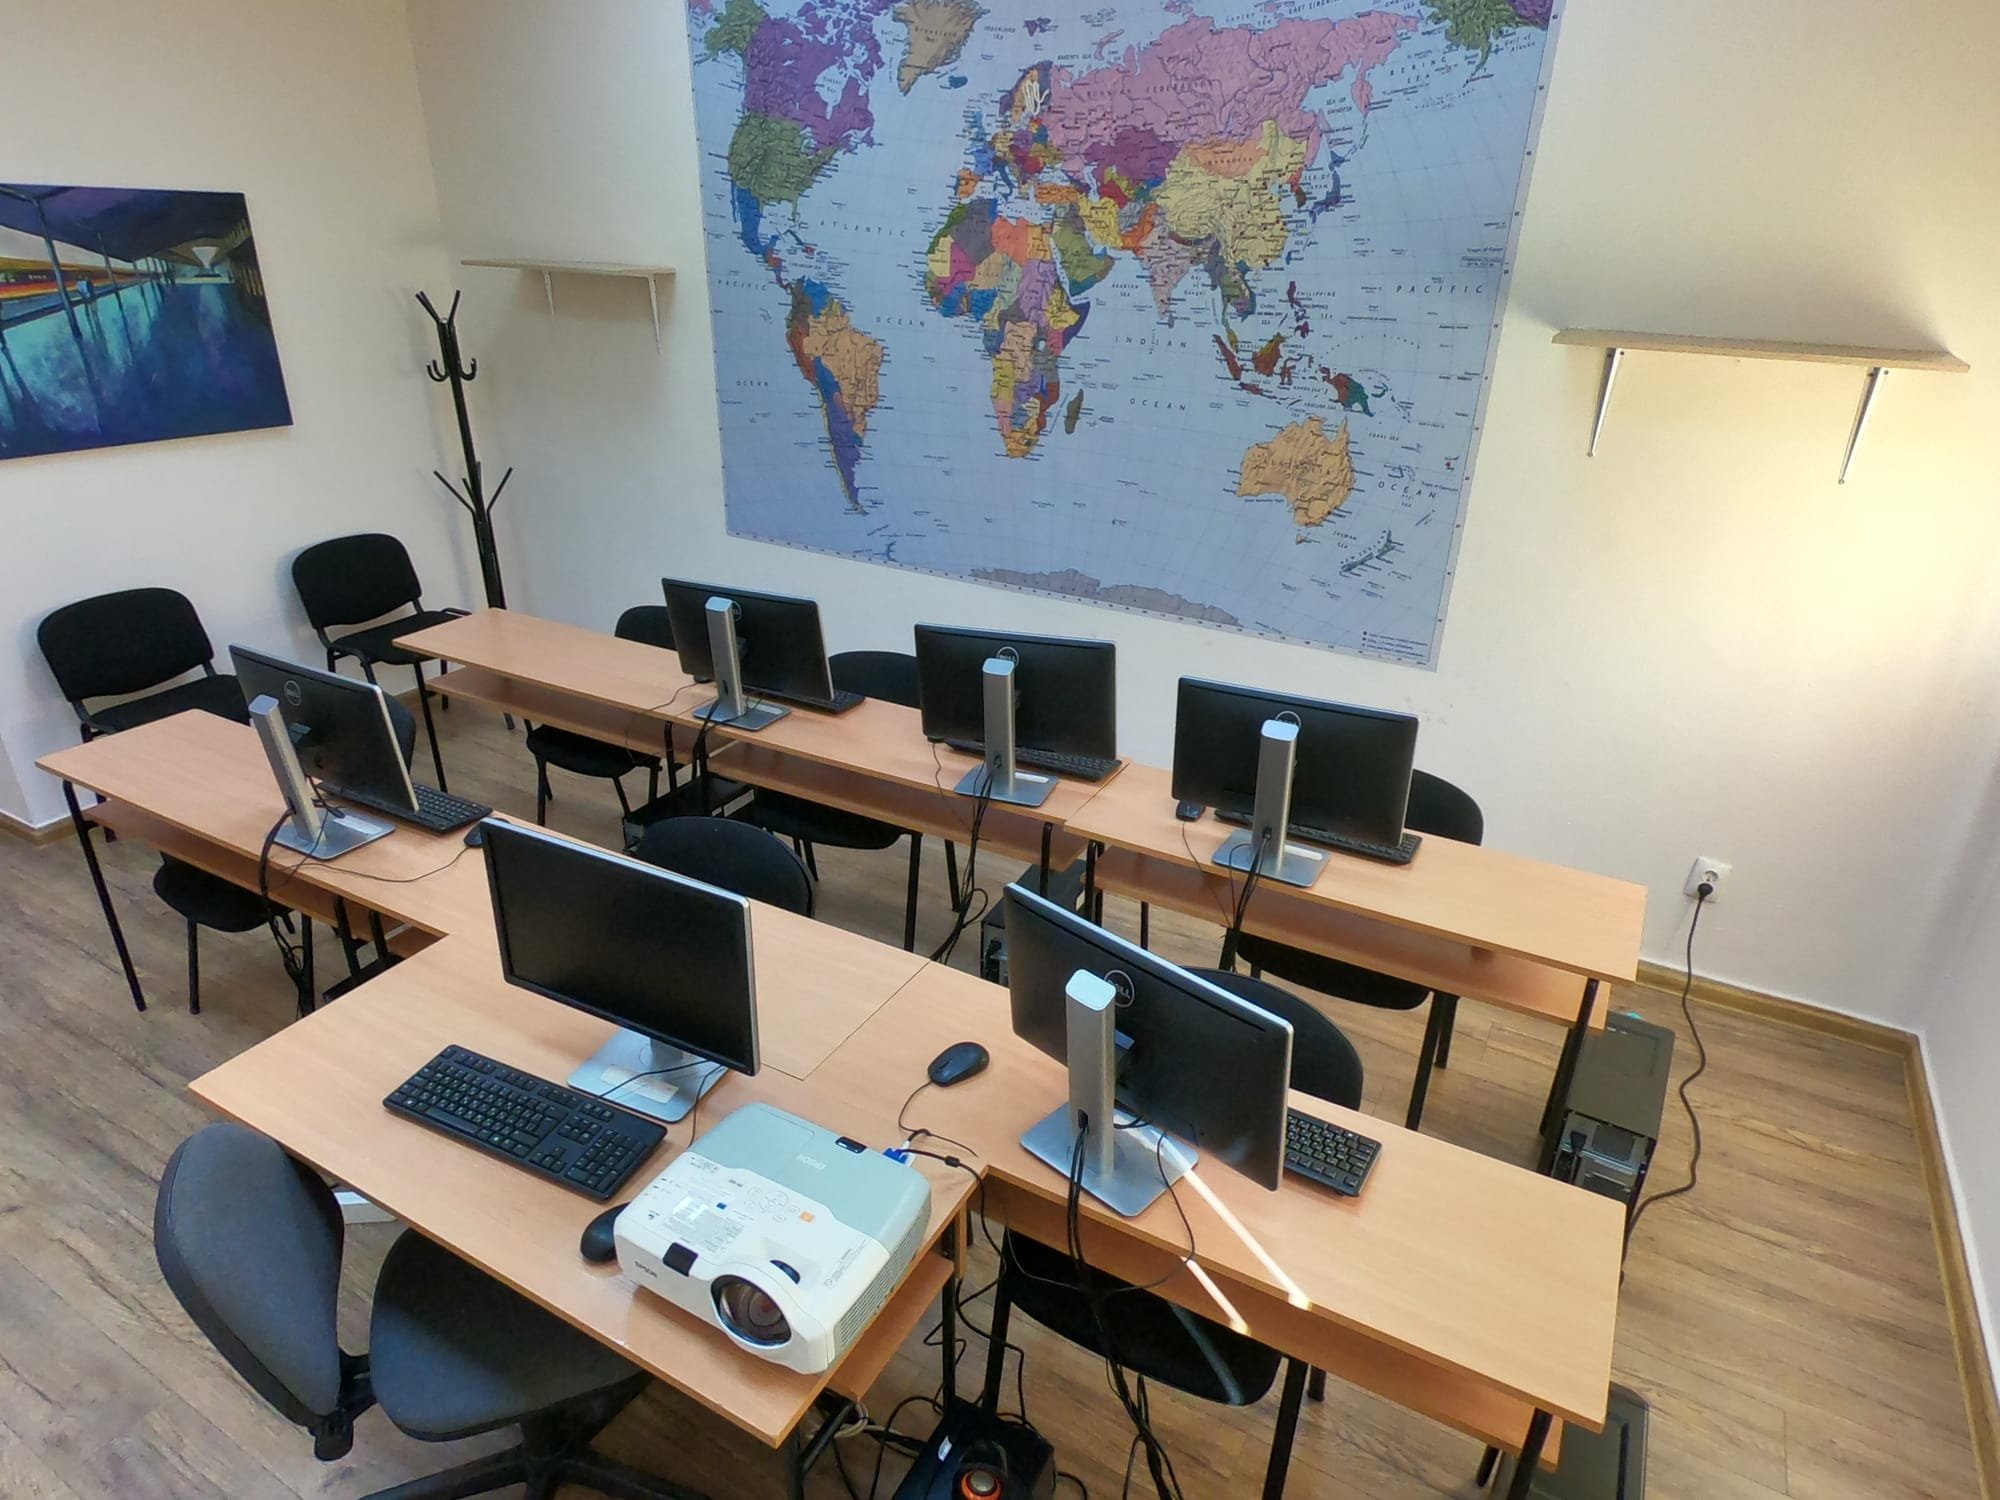 ЧСБУ „Талантите“ посреща първия учебен ден с обновени класни стаи